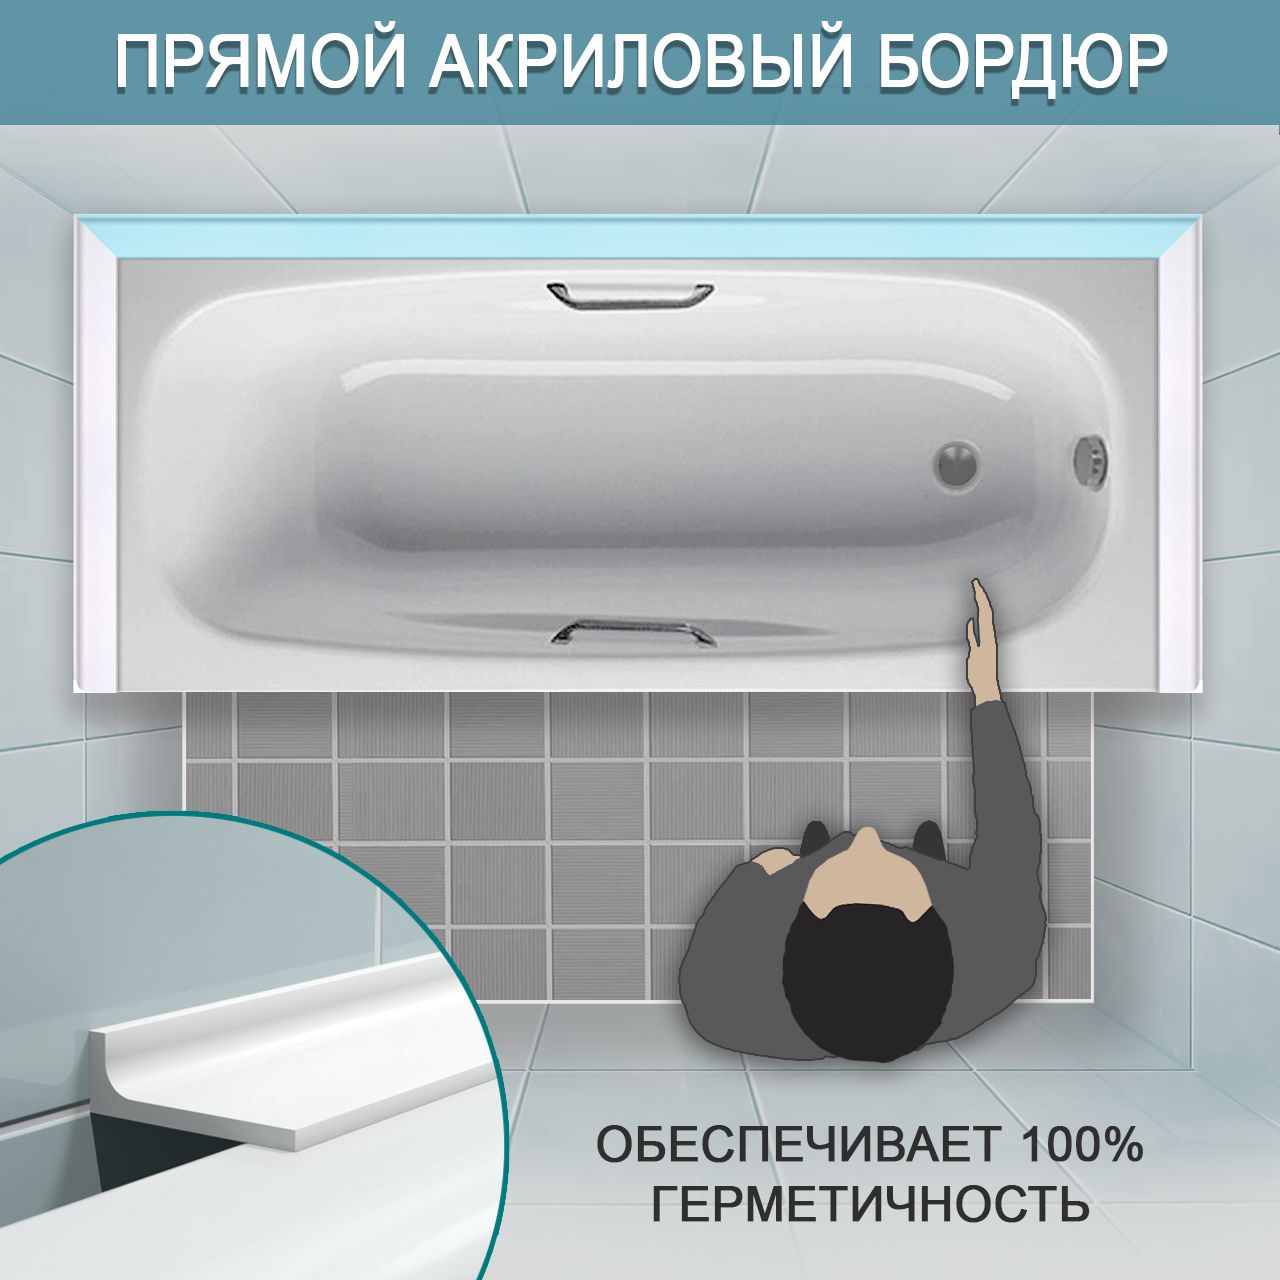 Акриловый бордюр для ванной ГЛ интернет-магазин BNV